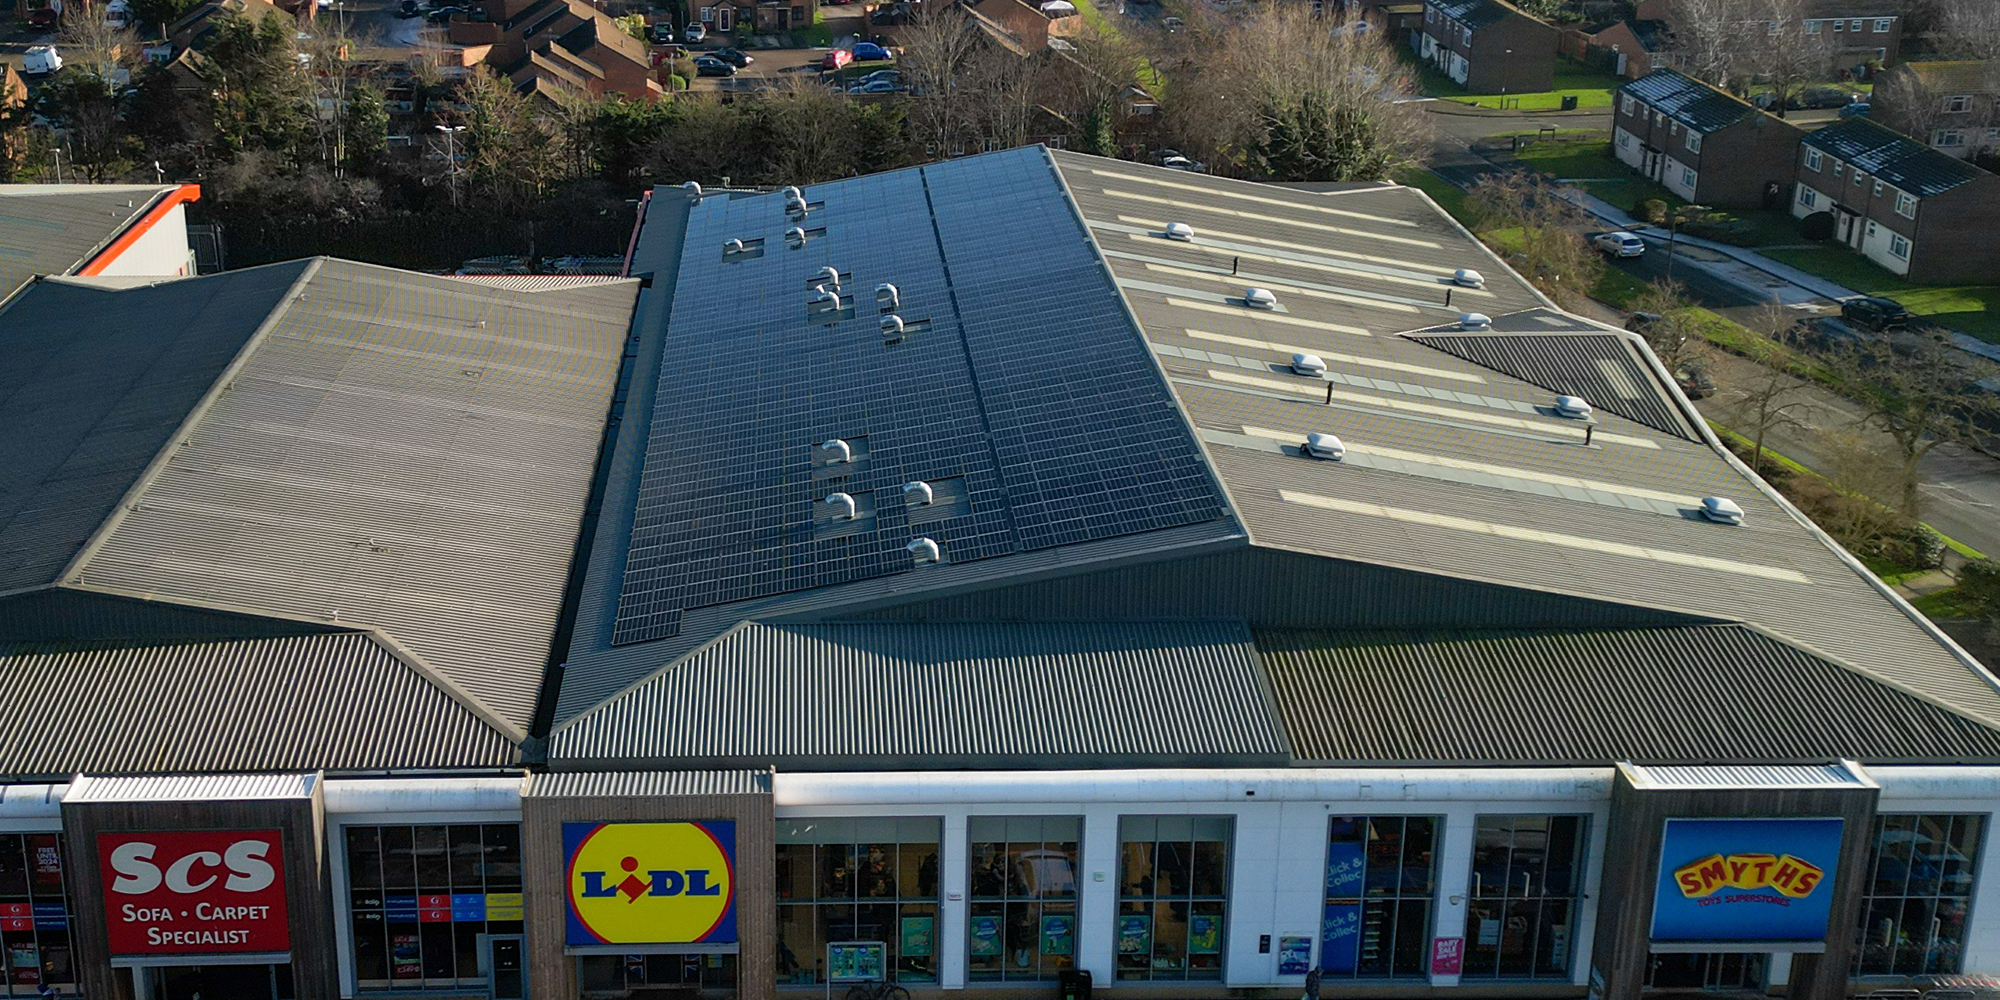 Lidl supermarket - solar panel installation